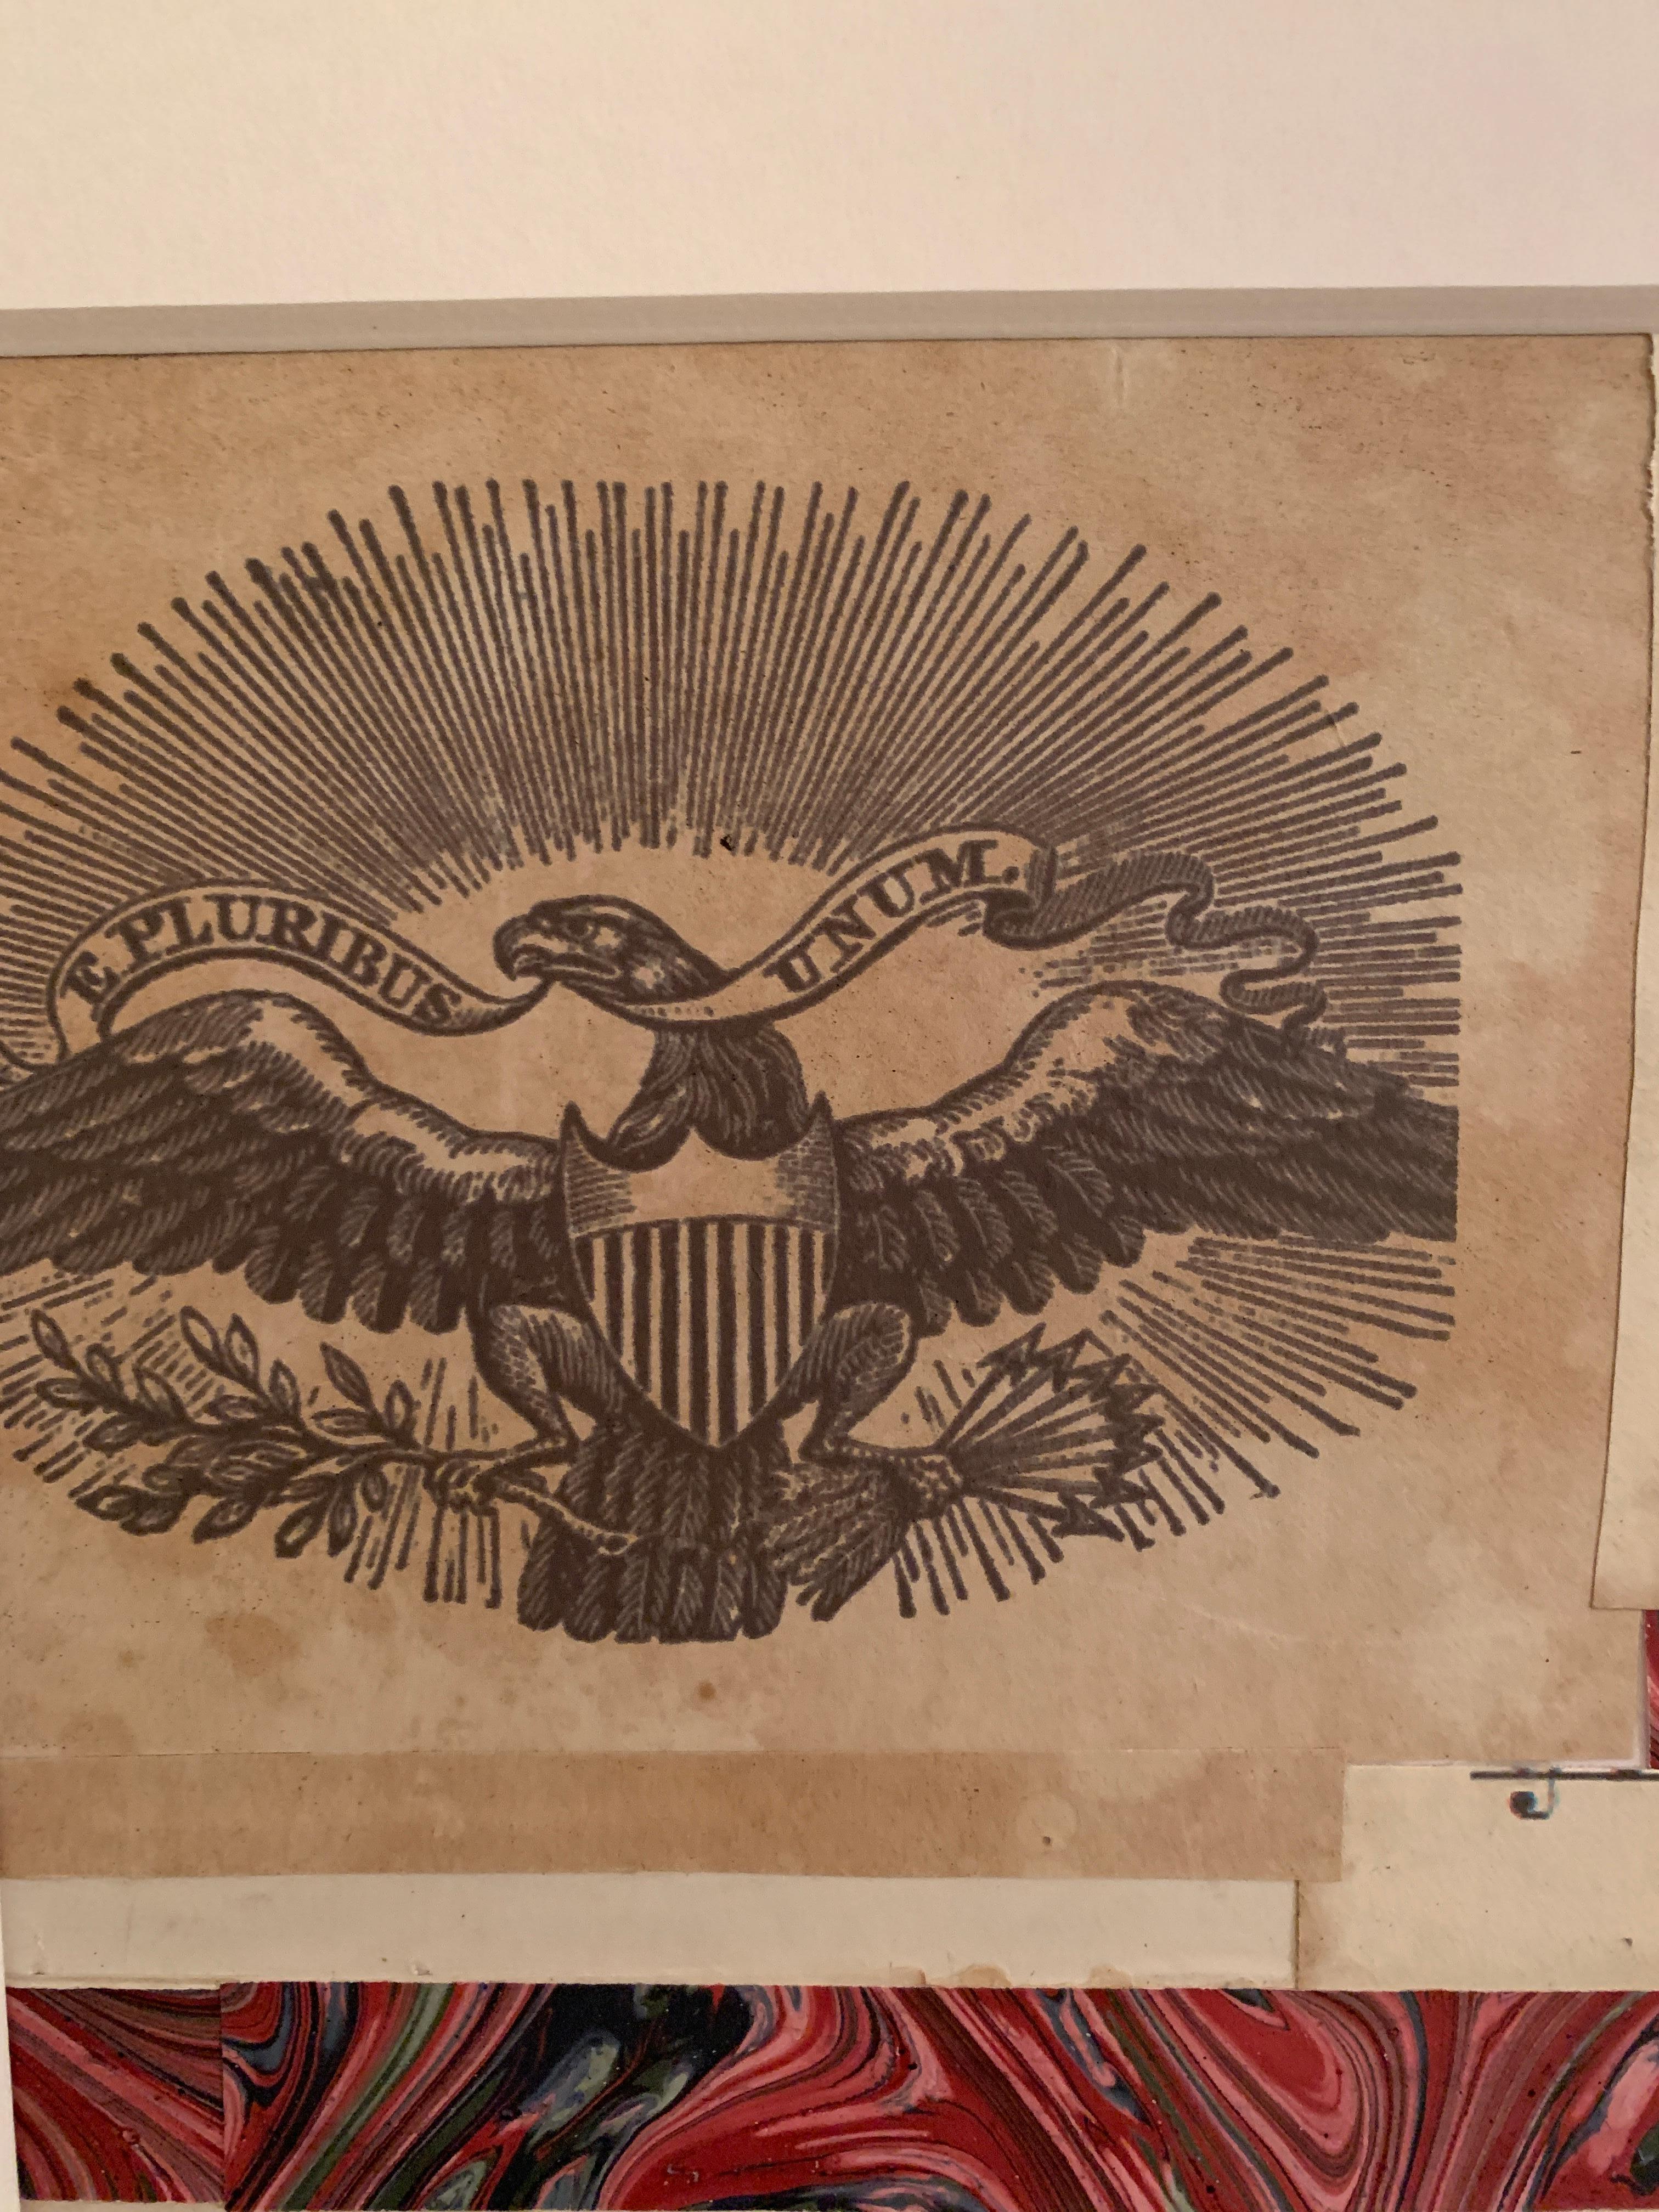 Amerikanische Flaggencollage aus dem 19. Jahrhundert mit einem Stich eines Adlers  (Amerikanische Moderne), Mixed Media Art, von Claude Howard Stuart